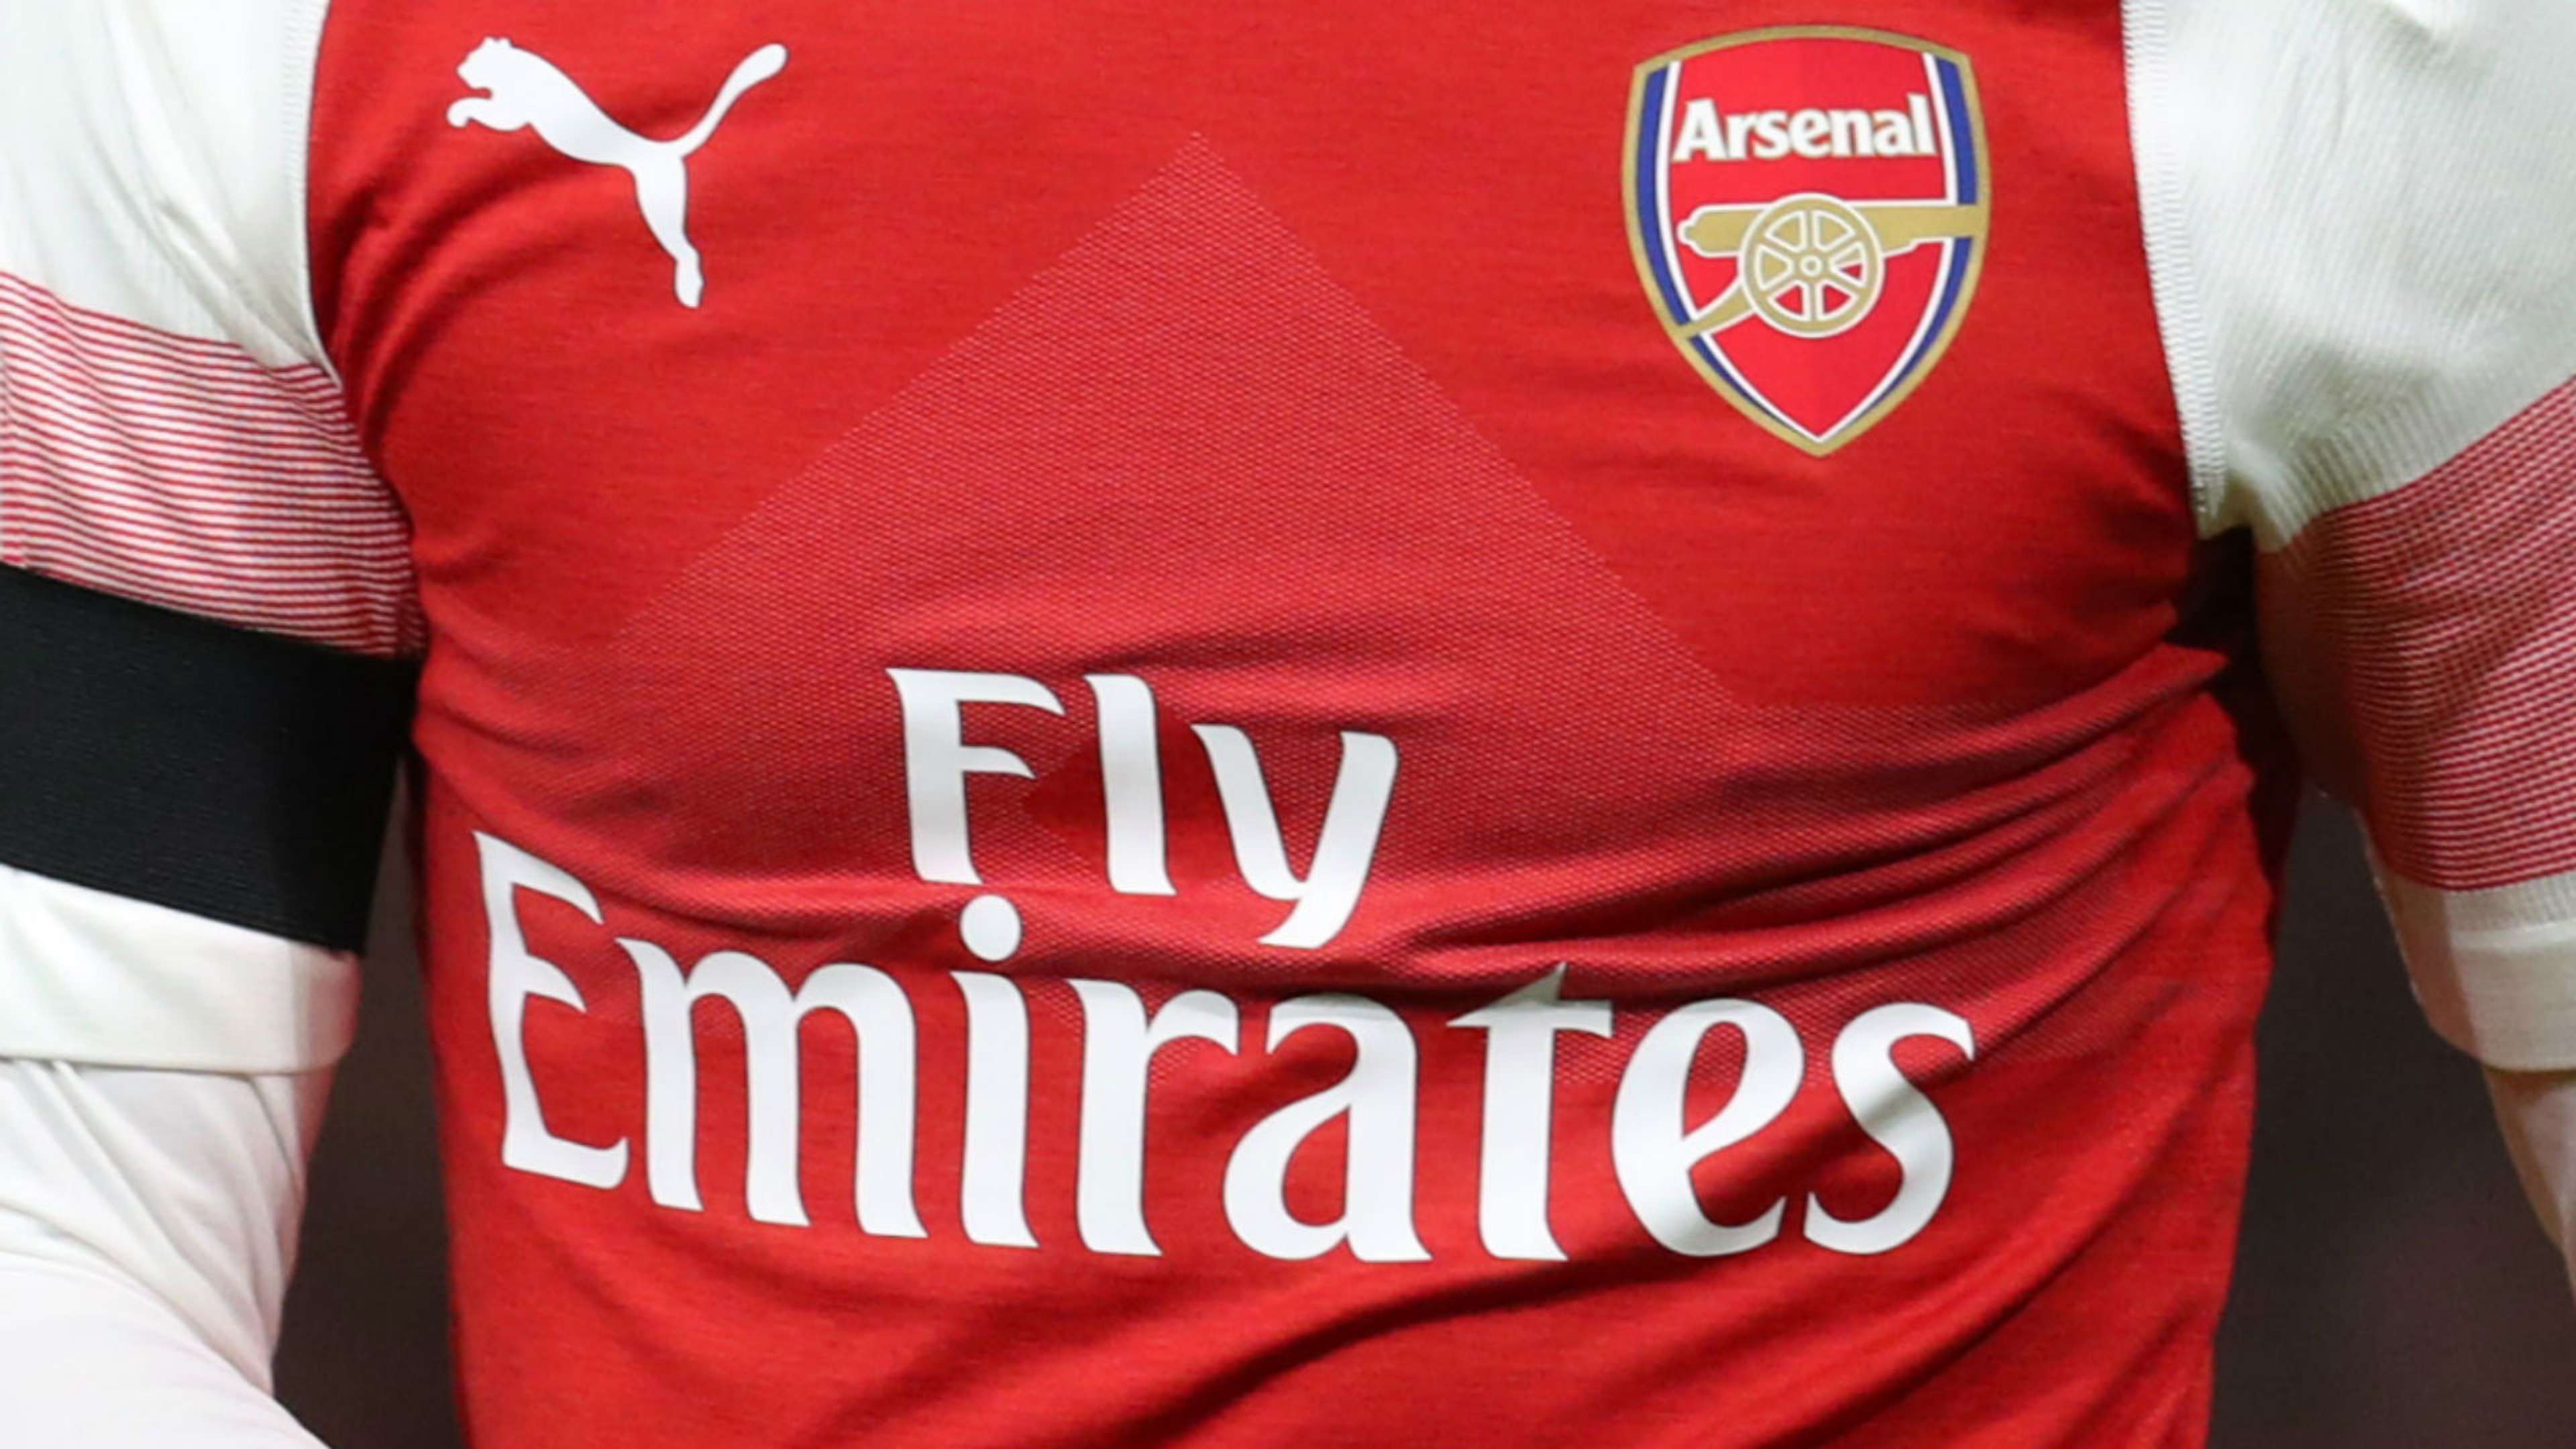 Arsenal Fly Emirates